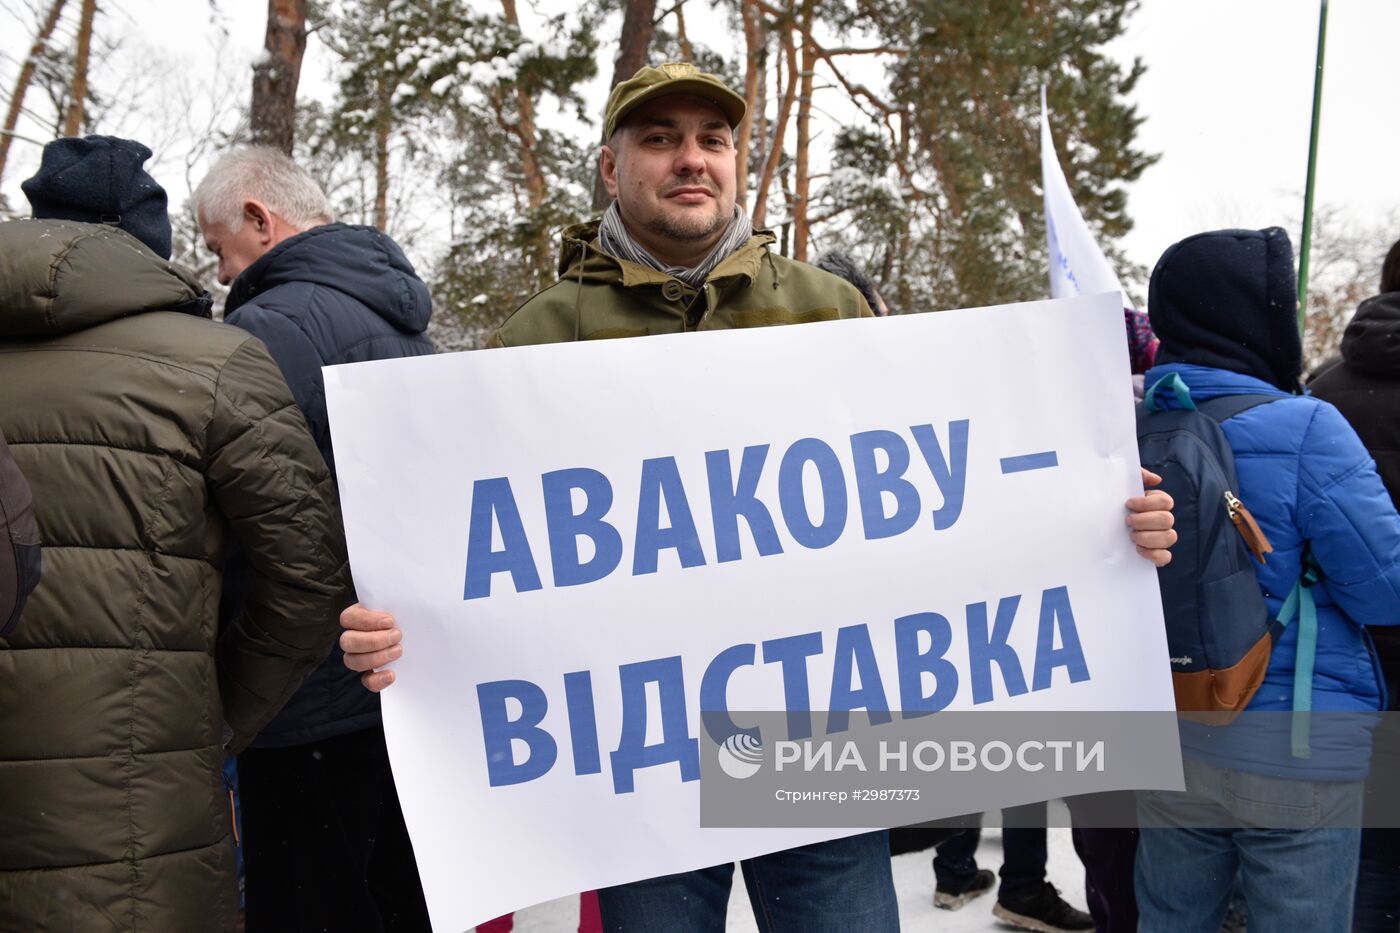 Митинг с требованием отставки главы МВД Украины А. Авакова в Киеве